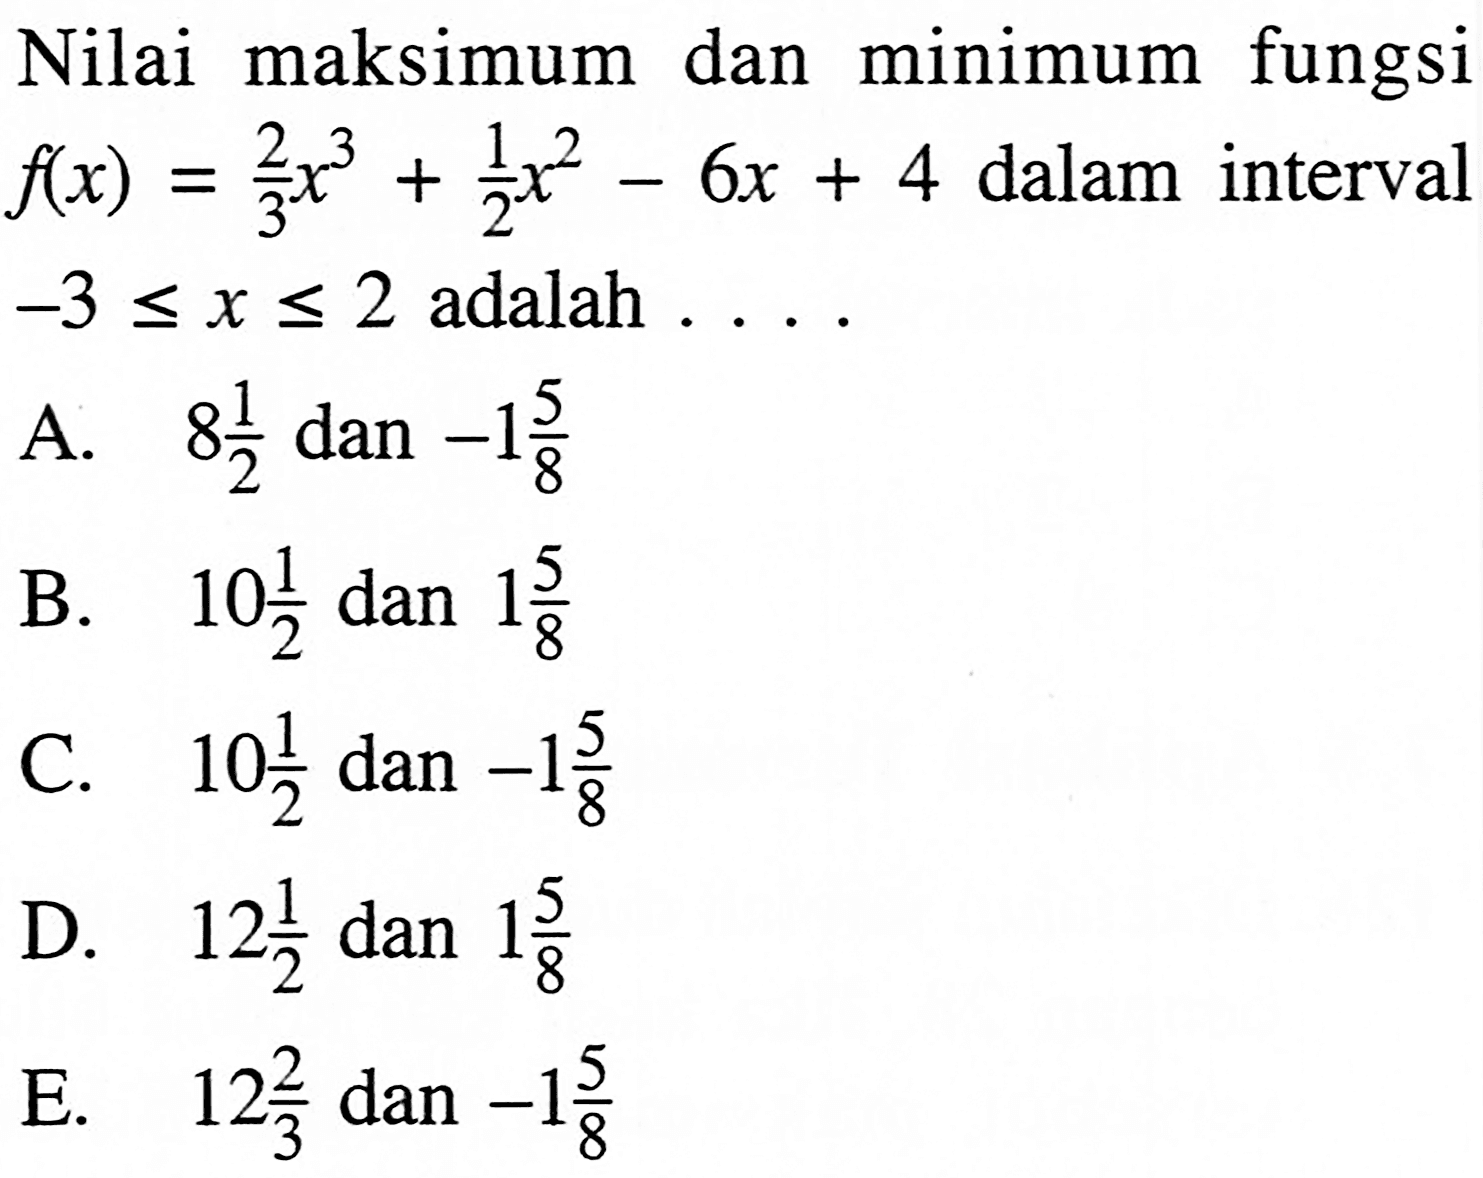 Nilai maksimum dan minimum fungsi  f(x)=(2/3)x^3+(1/2)x^2-6x+4  dalam interval  -3<=x<=2  adalah  ... 